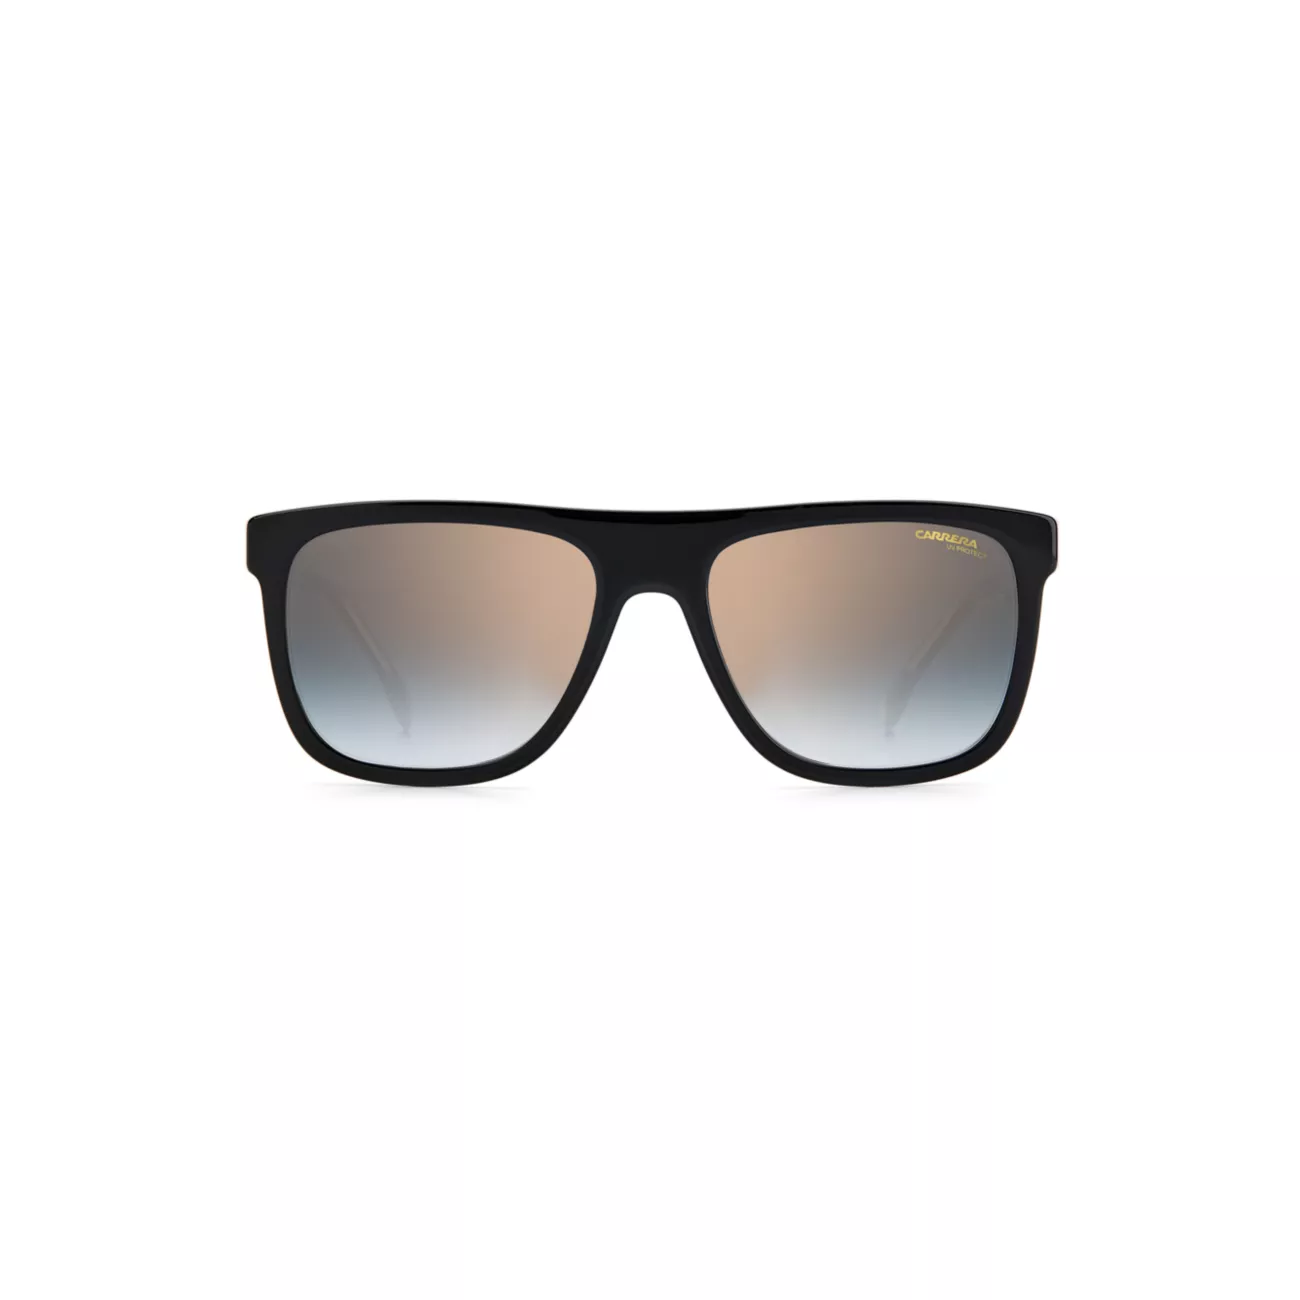 Квадратные солнцезащитные очки Carrera 55 мм Carrera